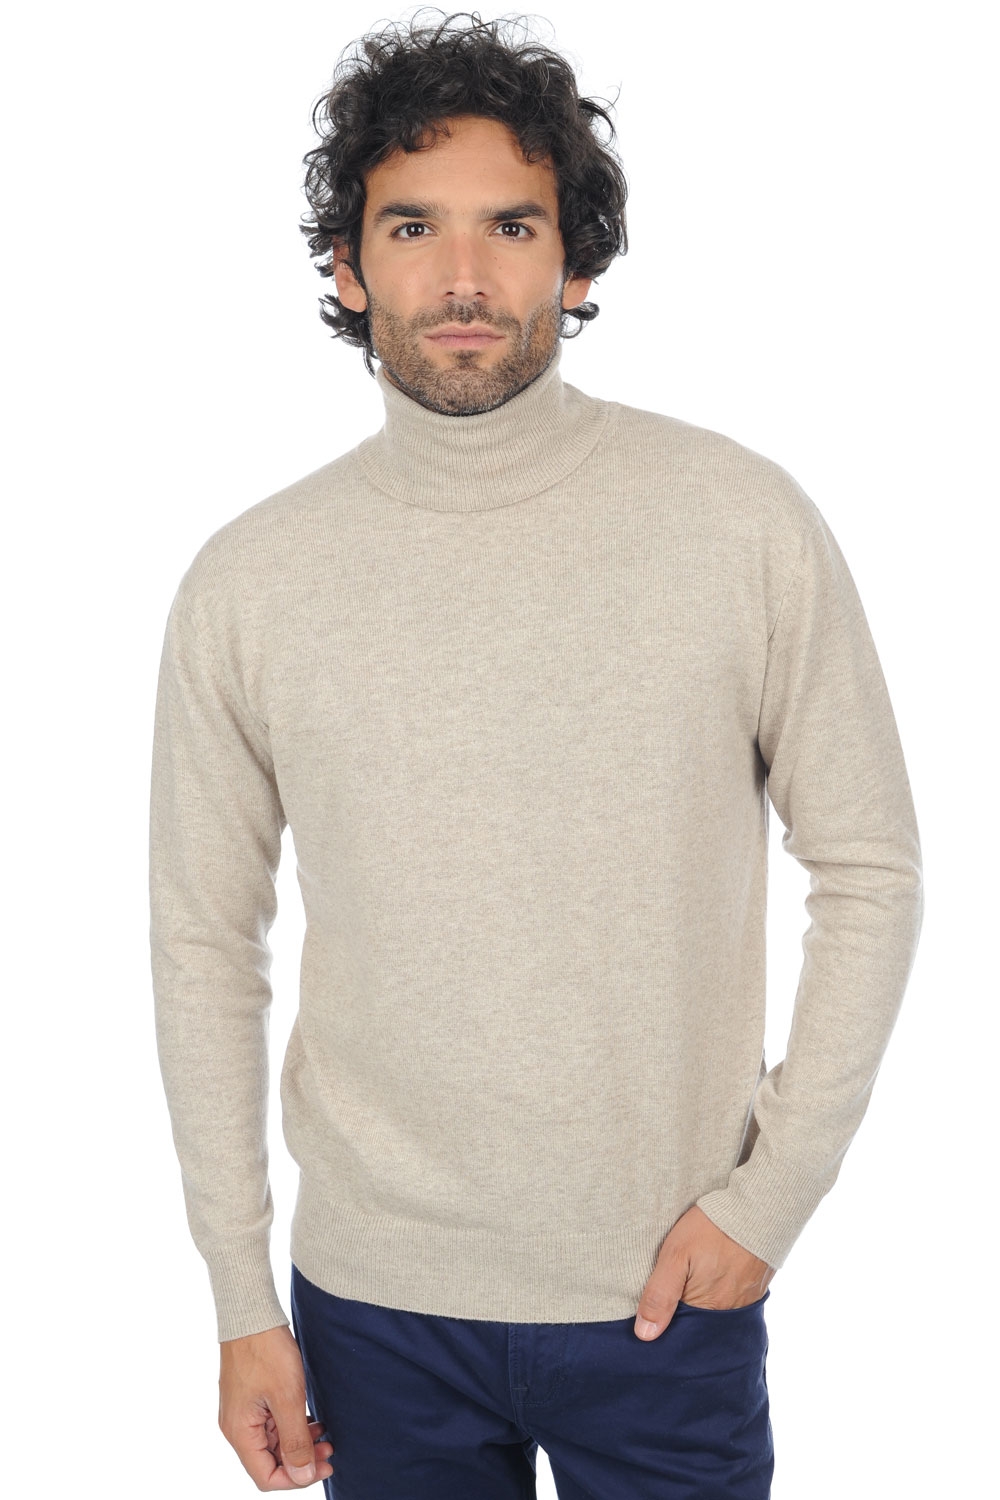 Cashmere men premium sweaters edgar premium pema natural 4xl